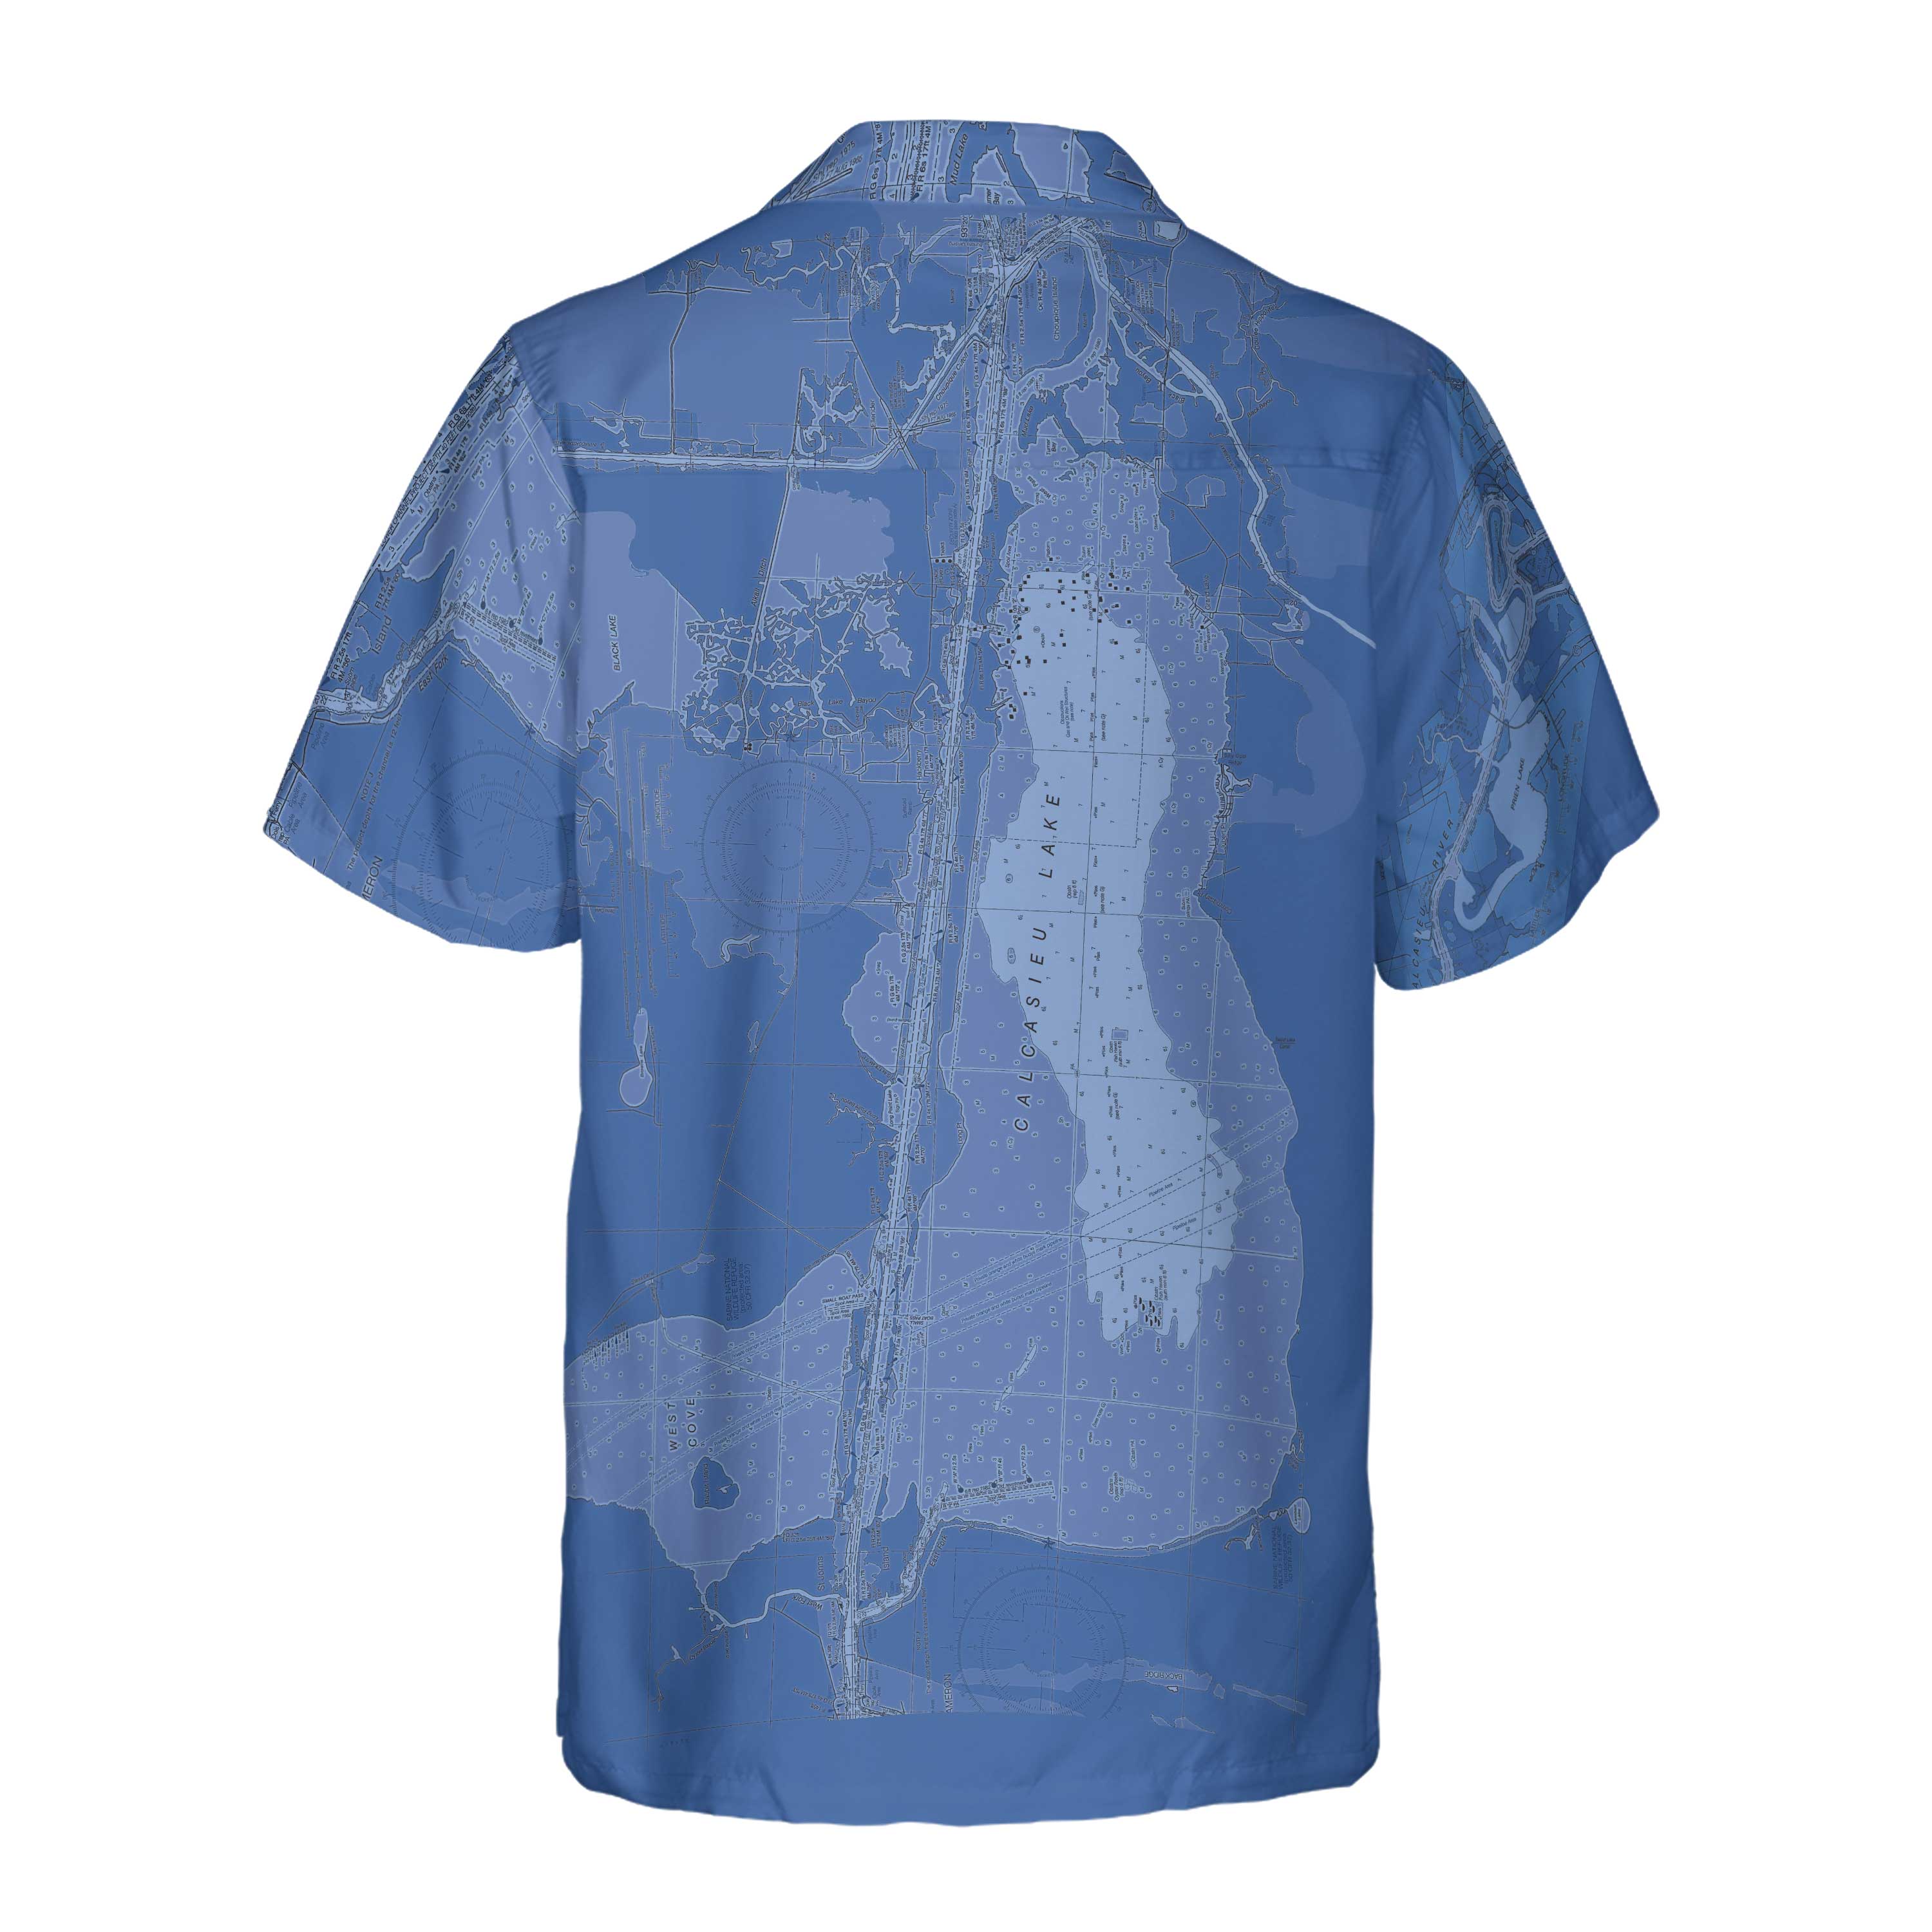 The Calcasieu Estuary Faded Blue Coconut Button Camp Shirt